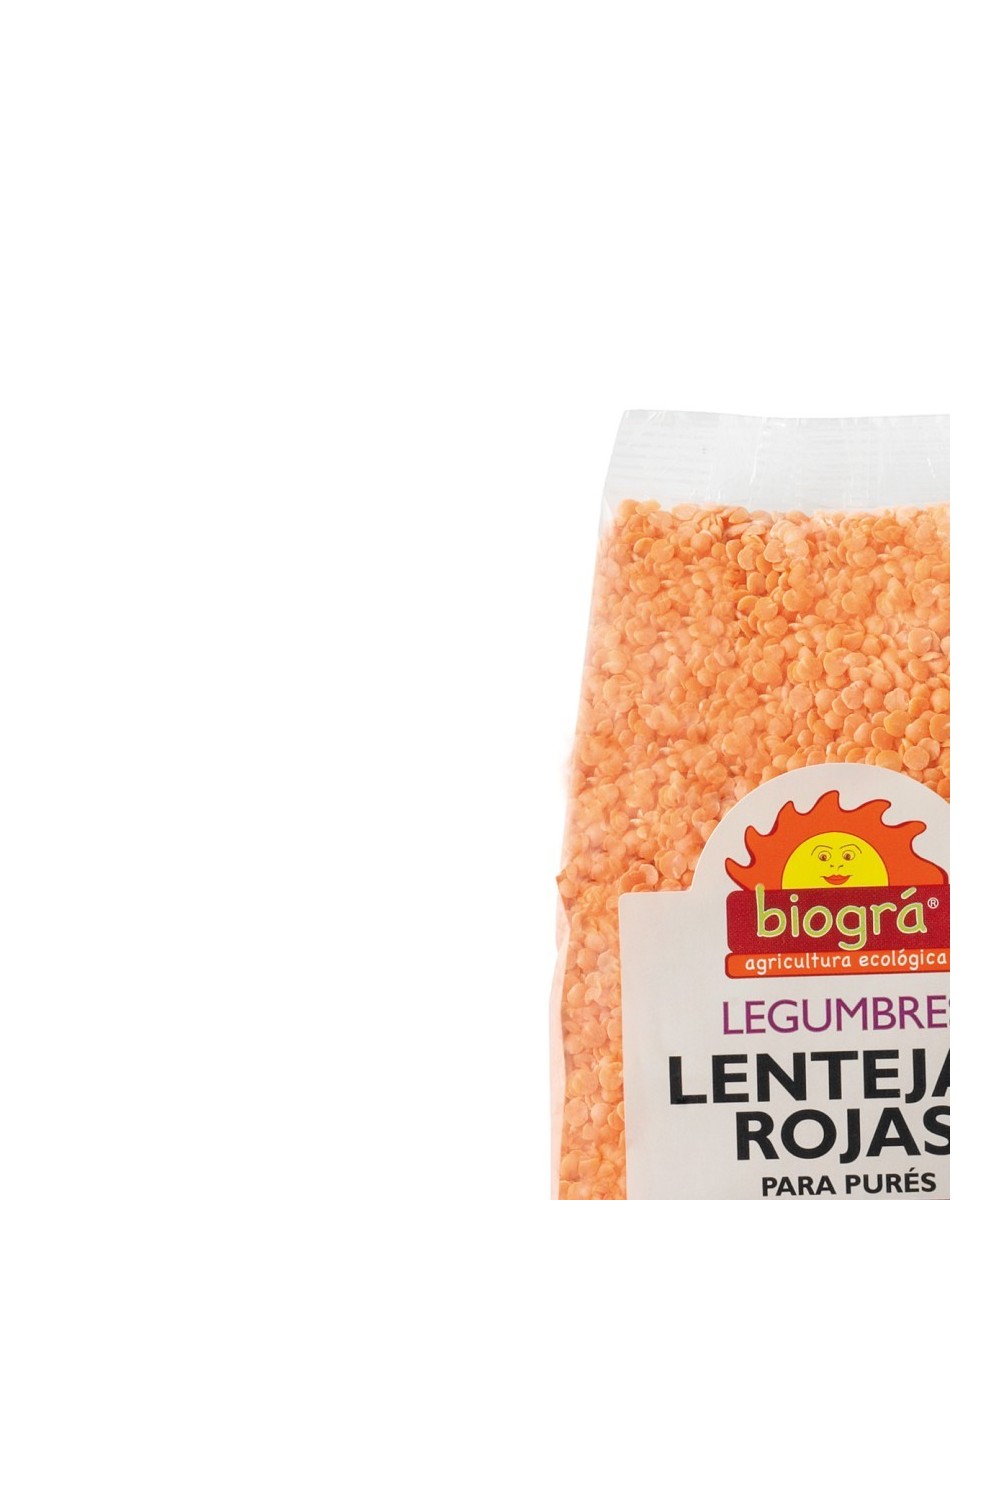 BIOGRÁ - Biográ Lentejas Rojas 500g Biogra Bio